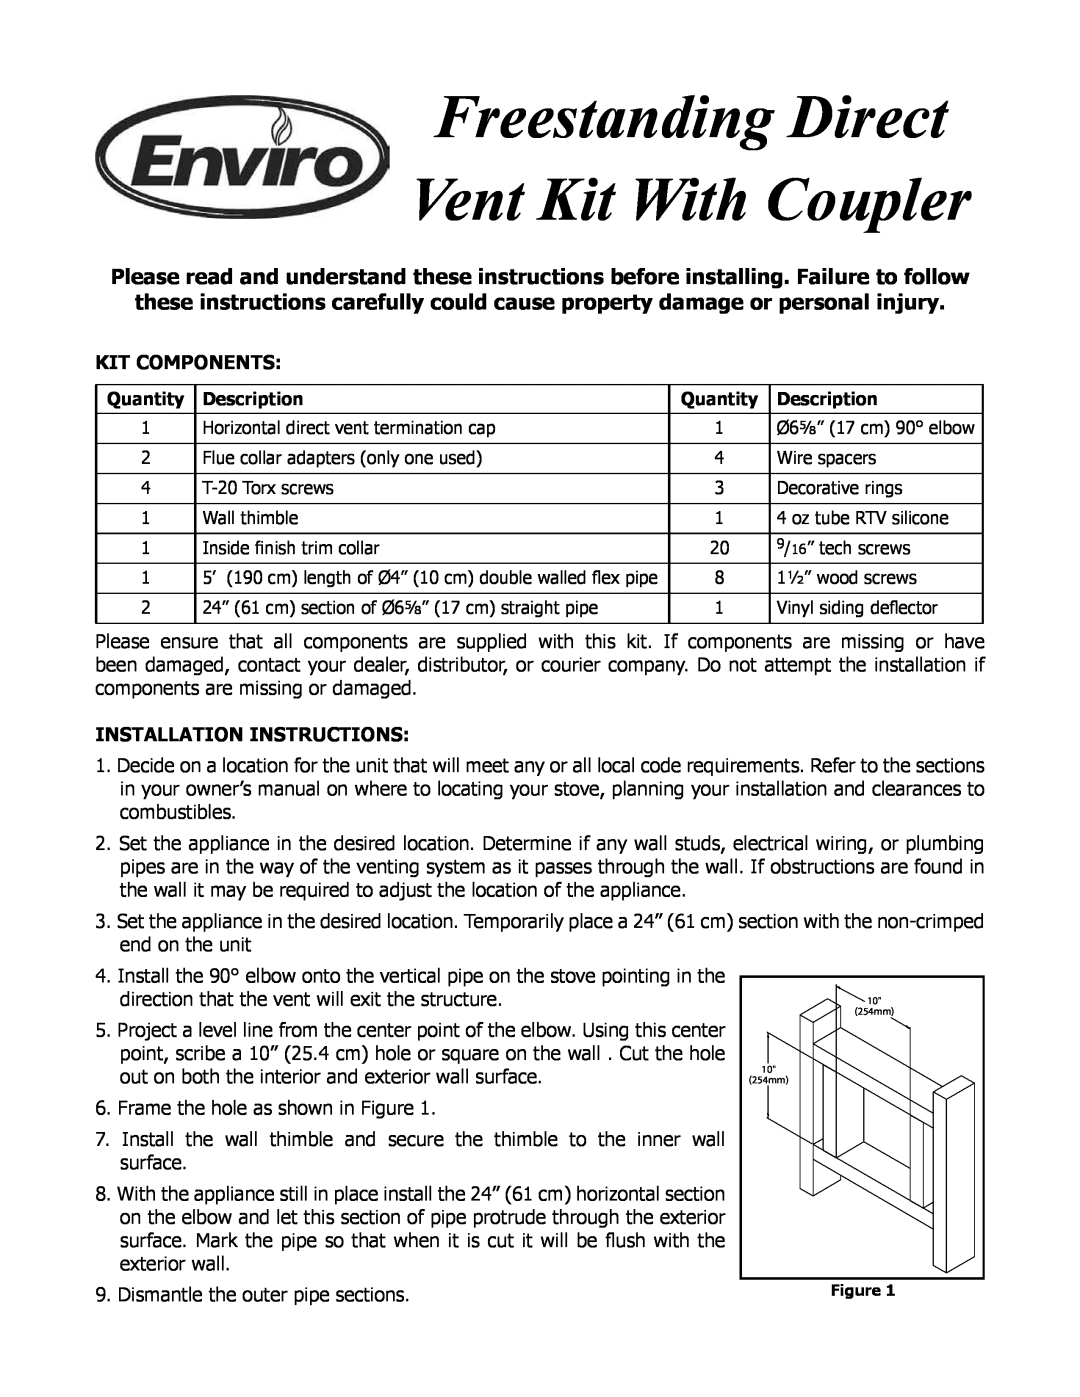 Enviro EC-061 installation instructions Kit Components, Installation Instructions 